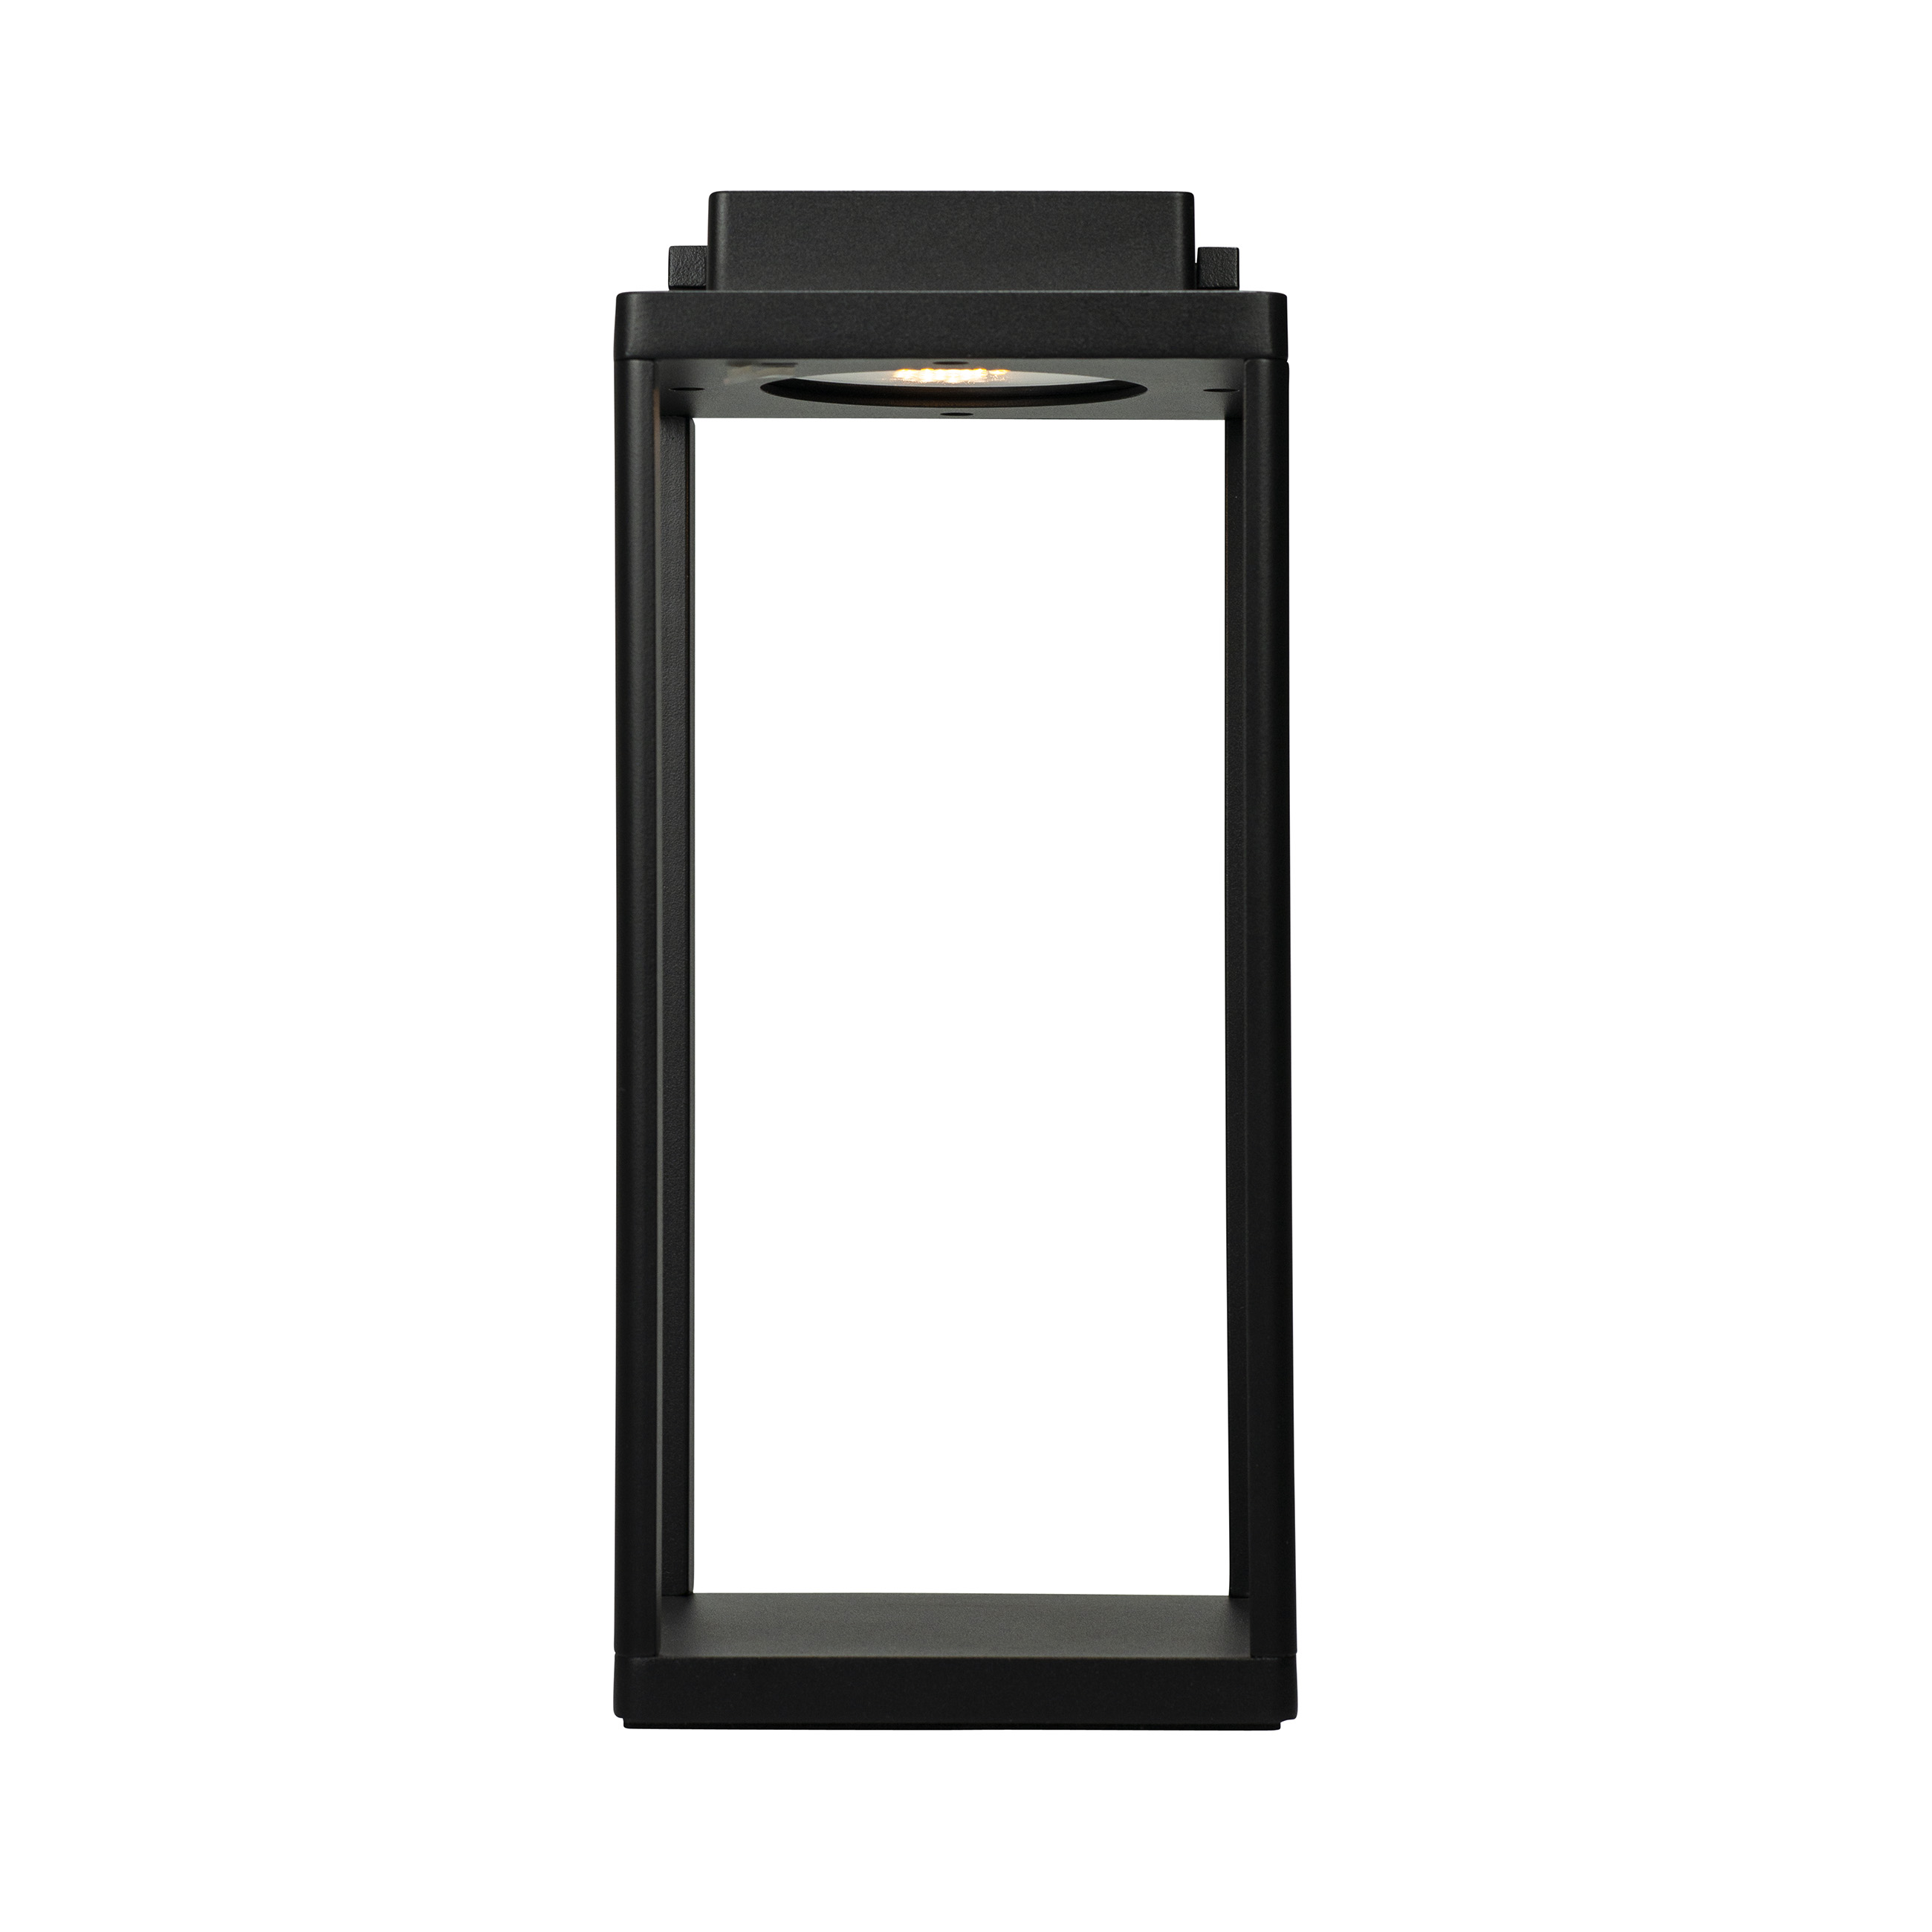 Lampe de table en aluminium noir mat, h 34 cm d 15 cm Lucca Lantern